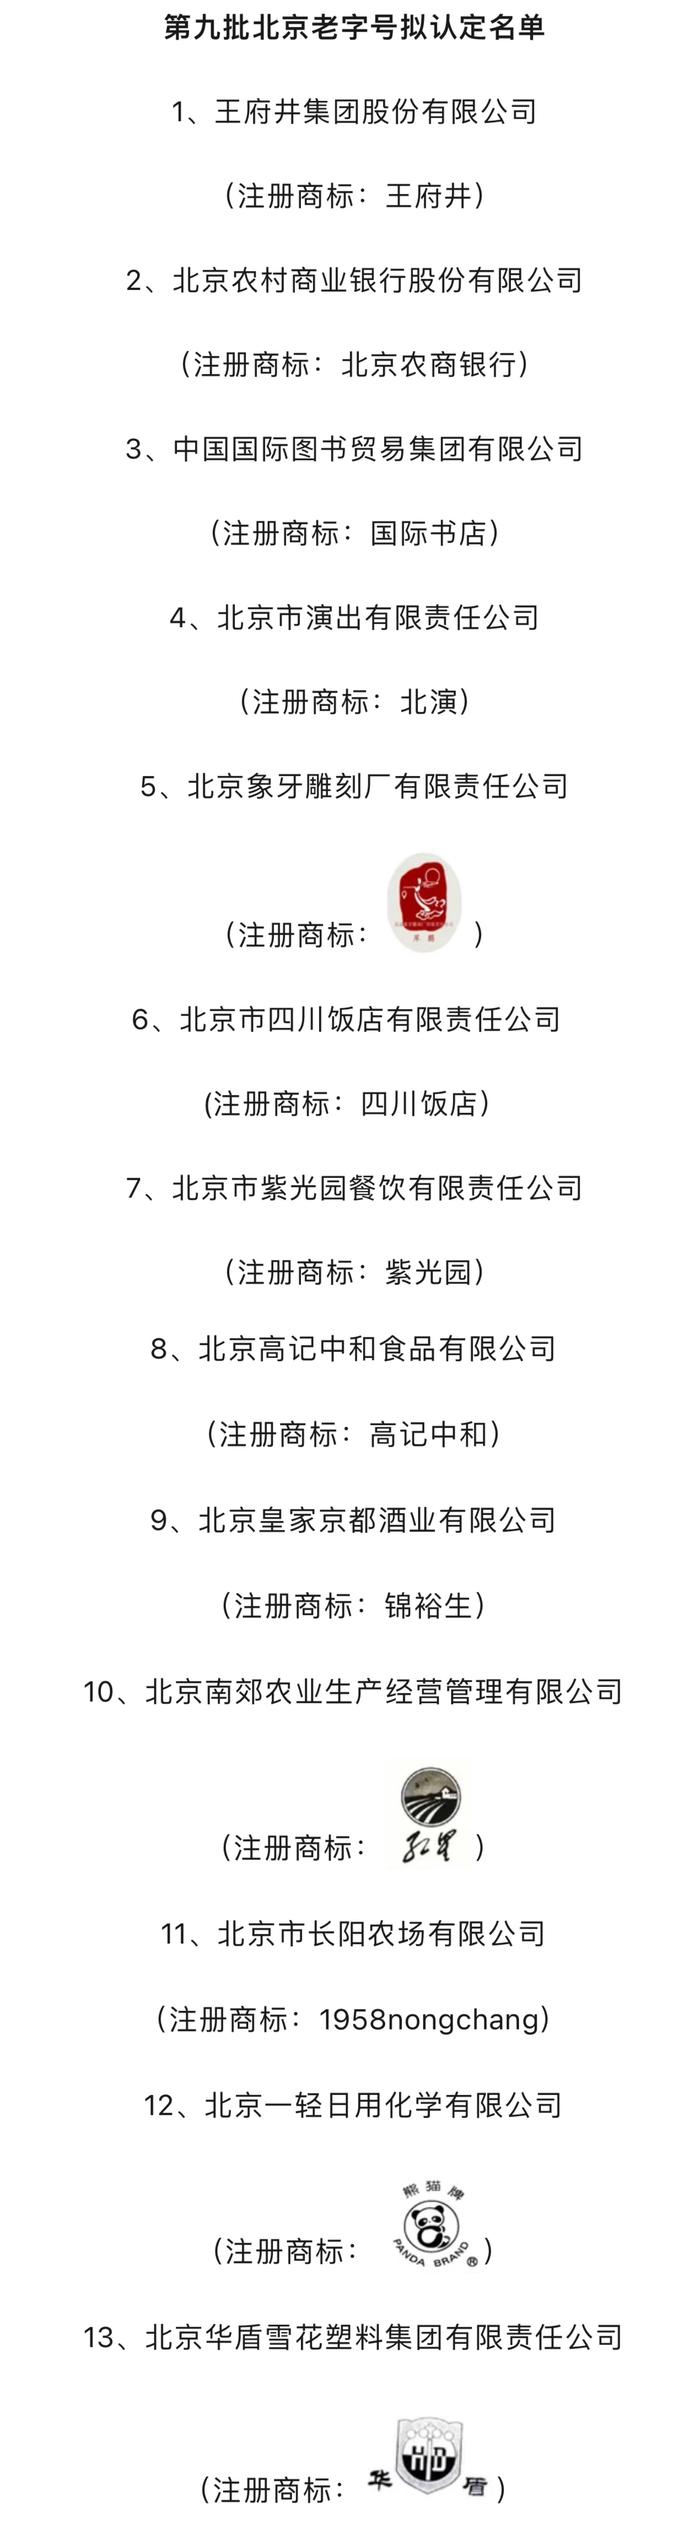 紫光园、四川饭店等13个企业拟被认定为第九批北京老字号